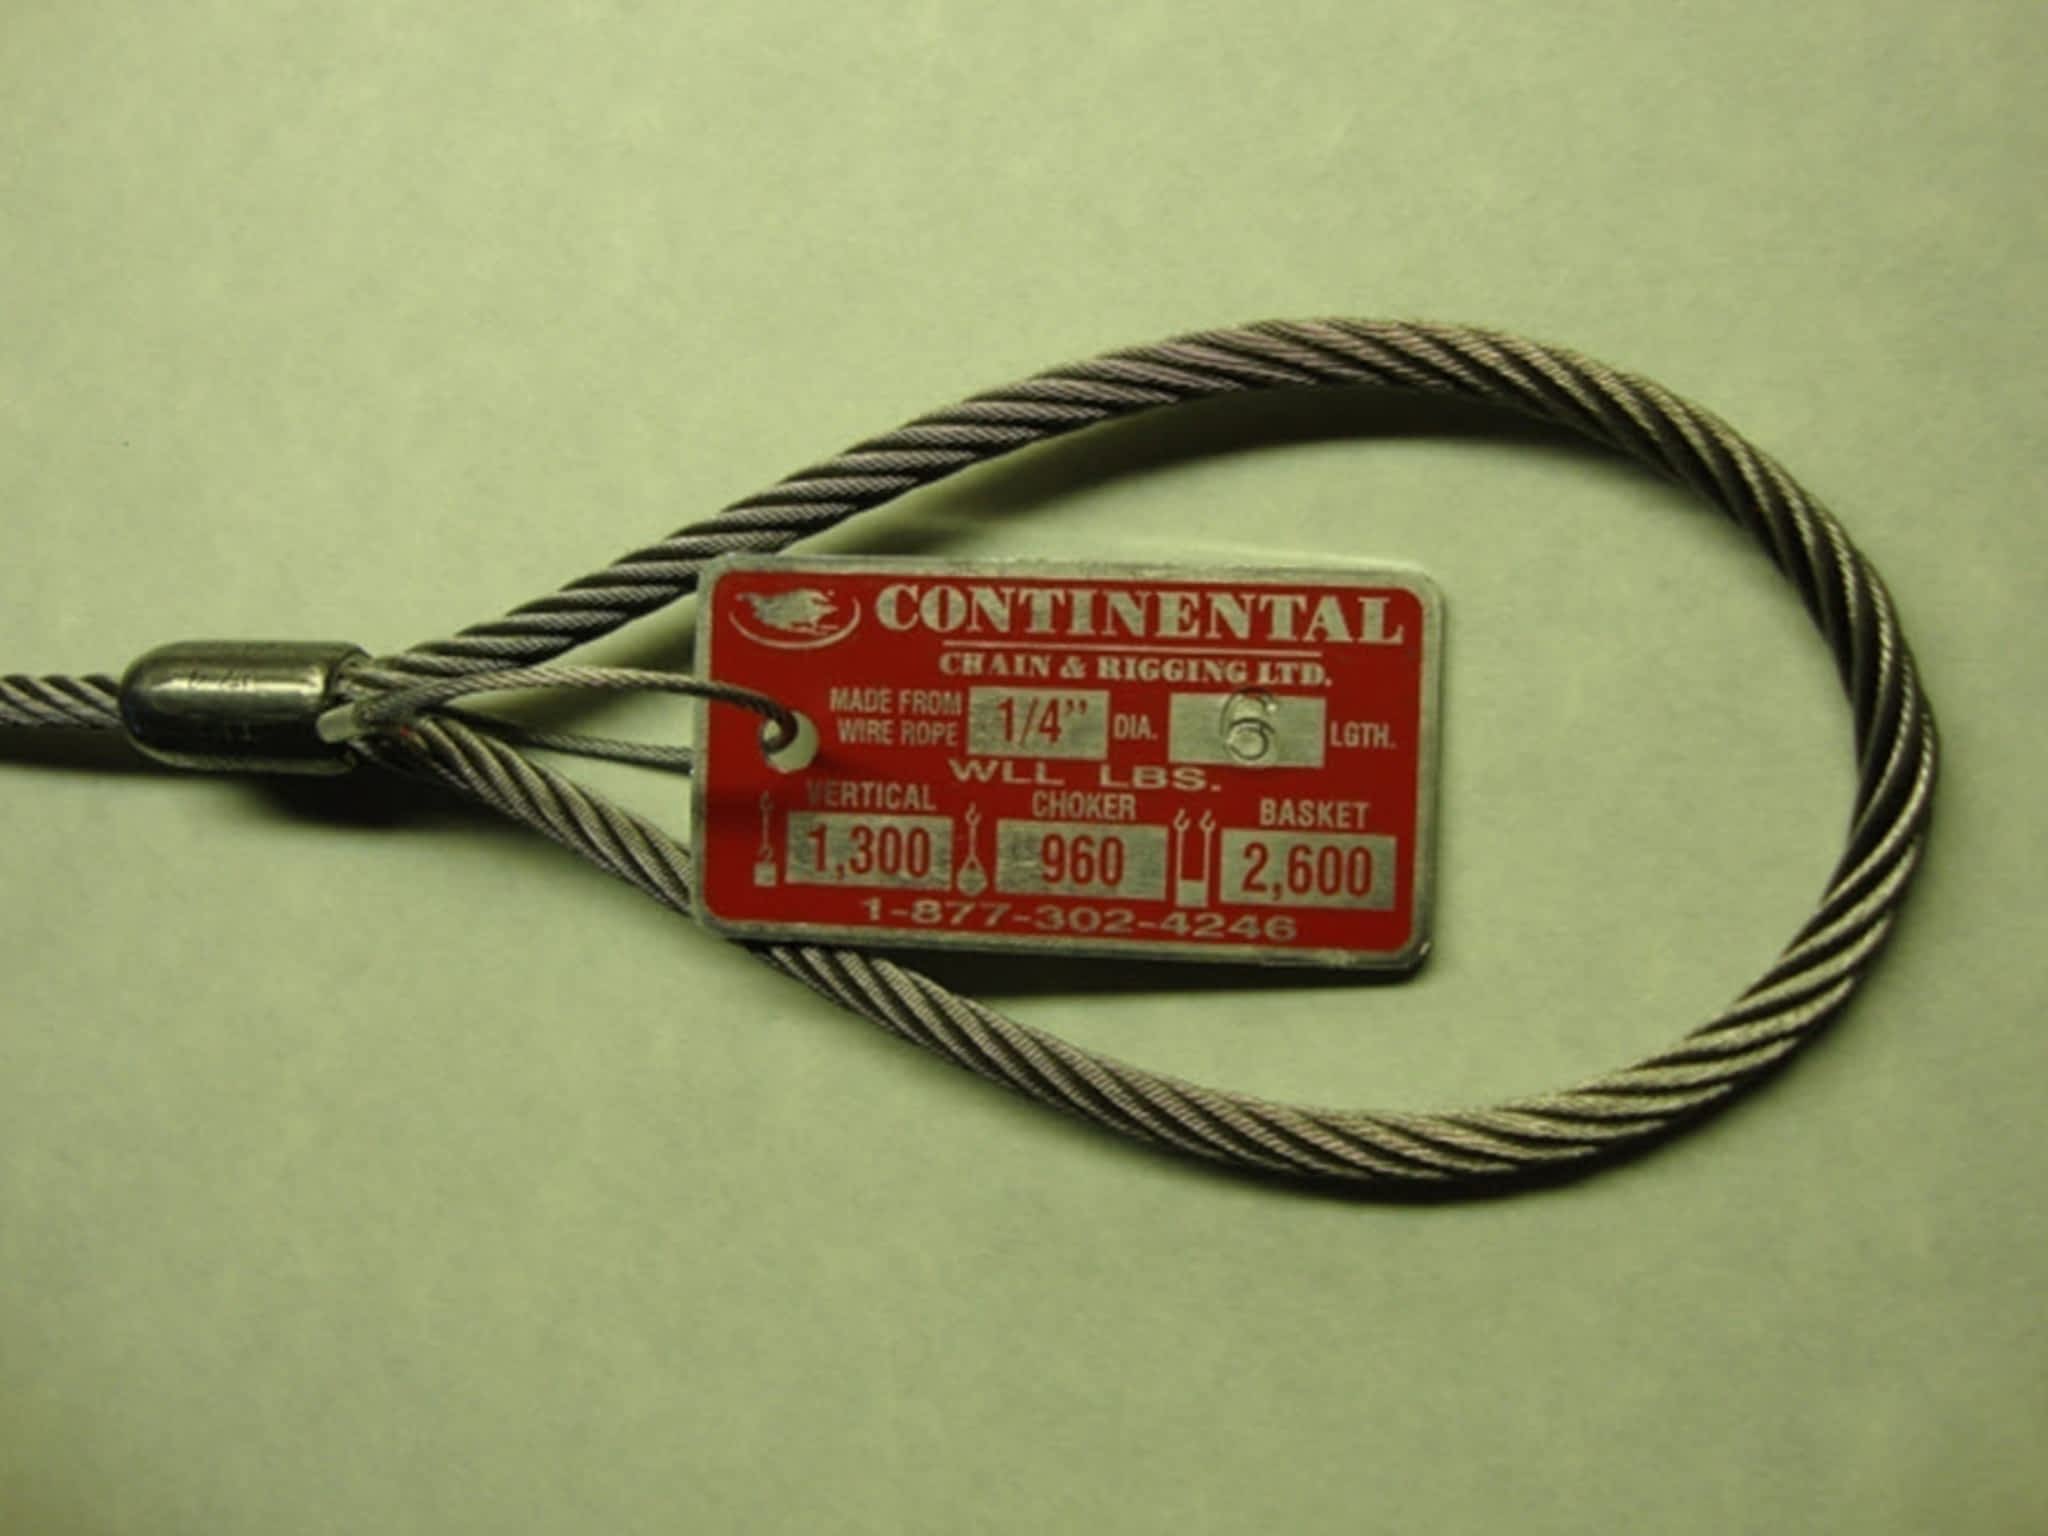 photo Continental Chain & Rigging Ltd.